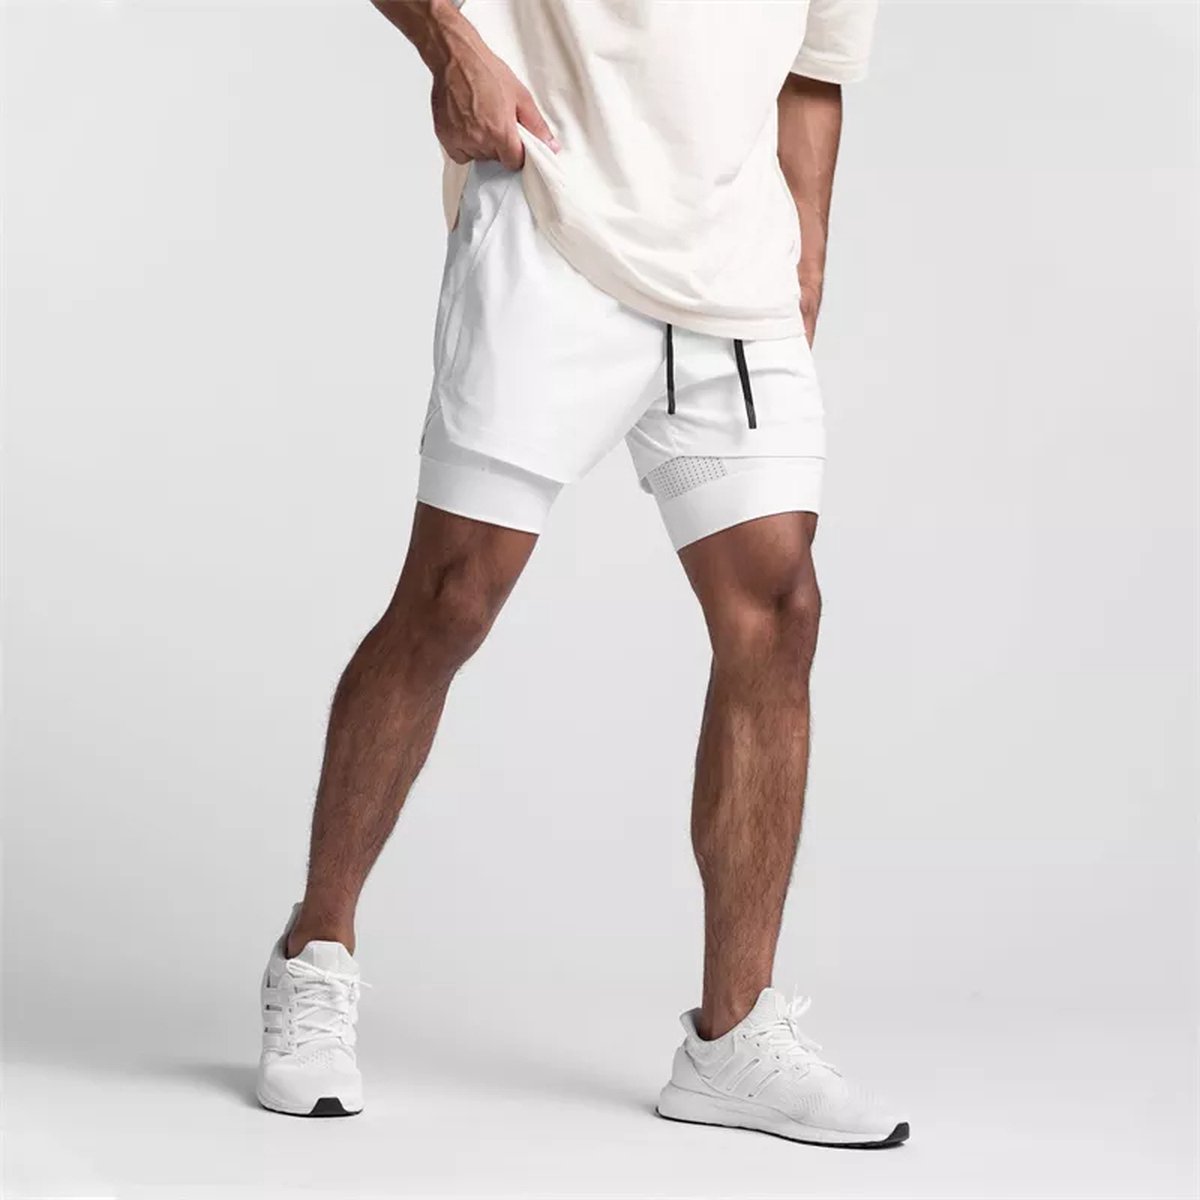 CLARRI® - Sportbroek voor Heren - Gym broek met mobiel zak en houder voor shirt - 3 in 1 Shorts – Hardloop & fitnessbroek – Wit Maat XL